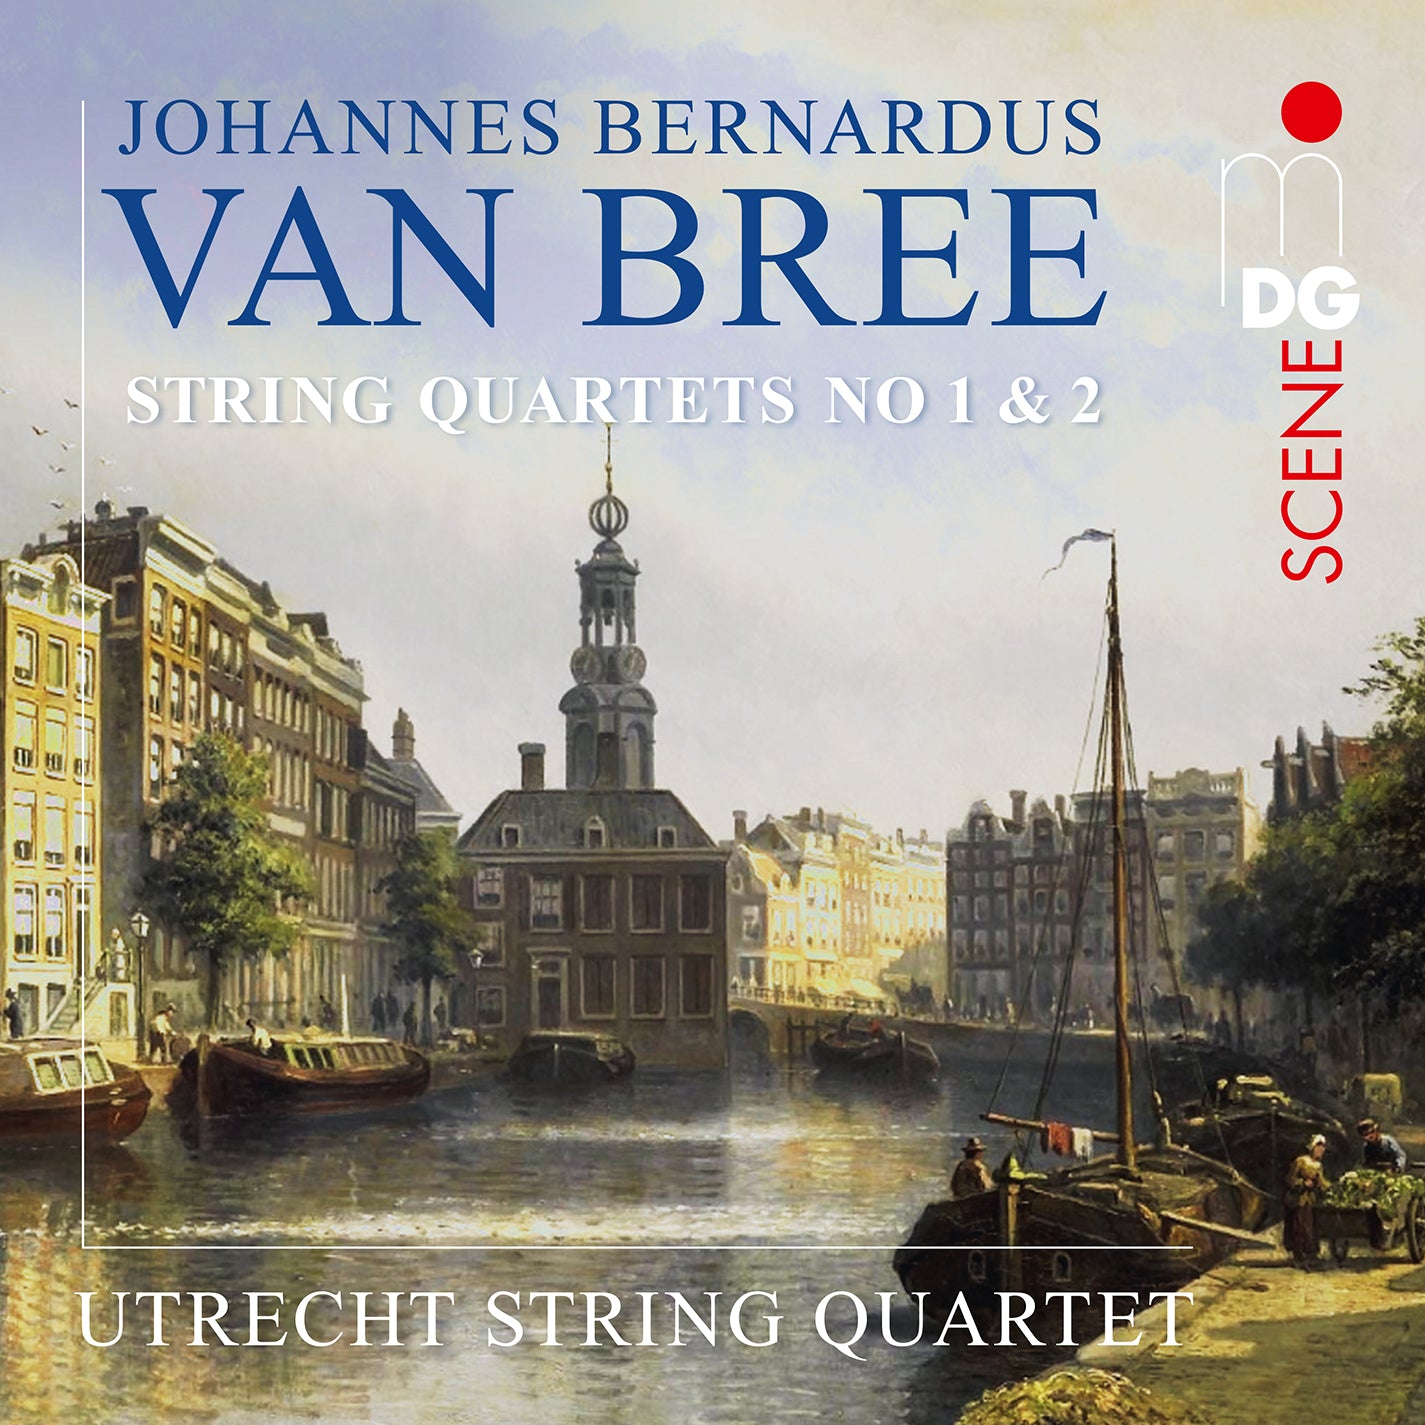 Van Bree: String Quartets Nos. 1 & 2 / Utretch String Quartet